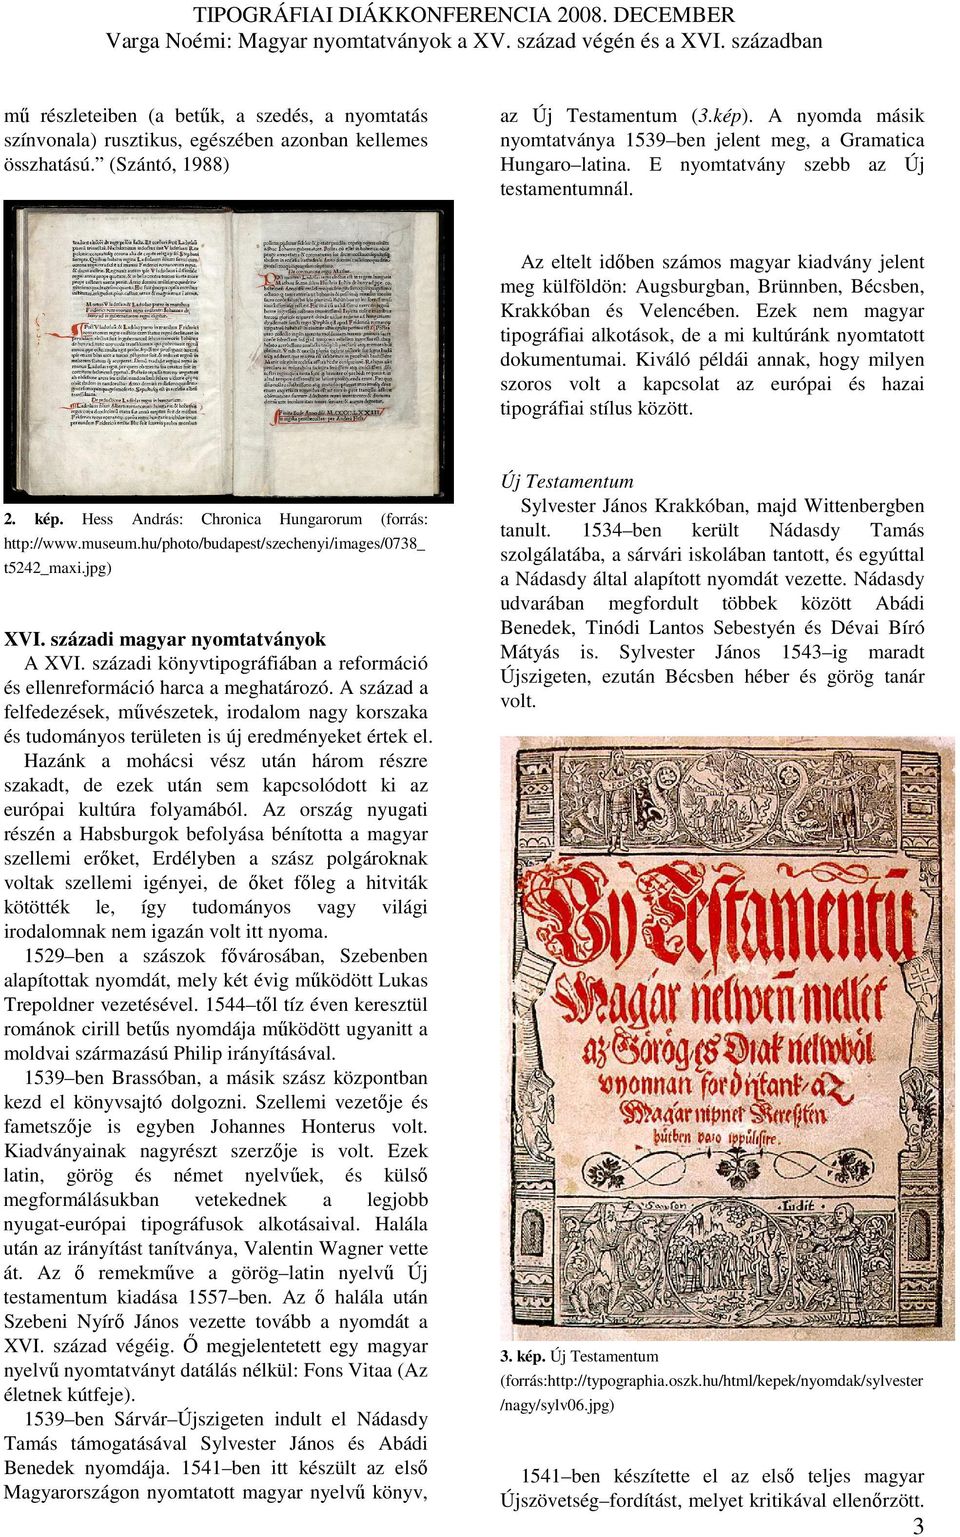 Az eltelt idıben számos magyar kiadvány jelent meg külföldön: Augsburgban, Brünnben, Bécsben, Krakkóban és Velencében. Ezek nem magyar tipográfiai alkotások, de a mi kultúránk nyomtatott dokumentumai.